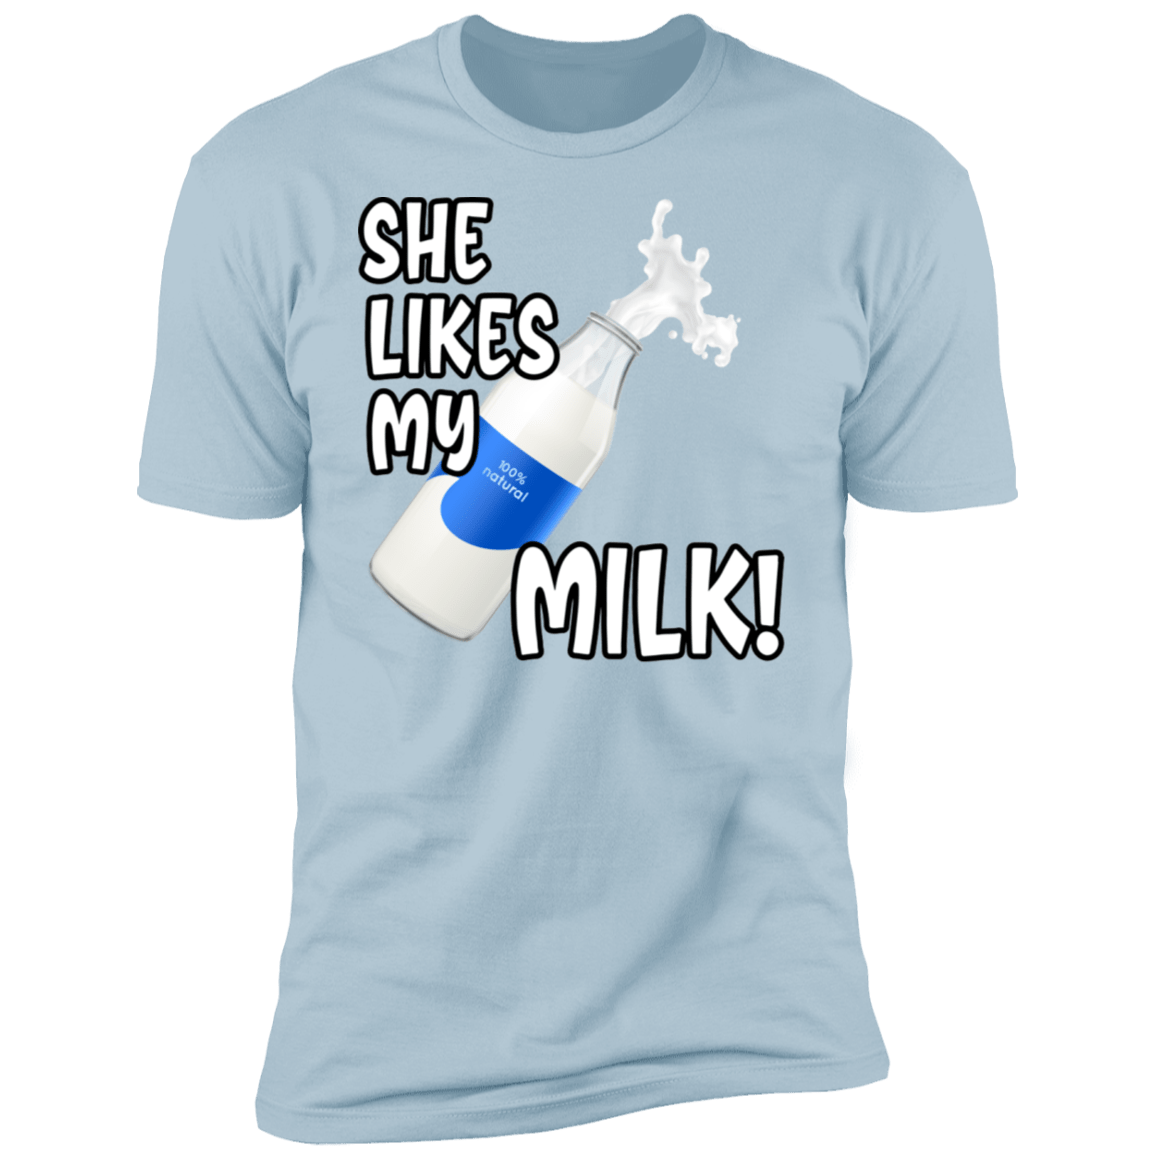 She Likes My Milk!